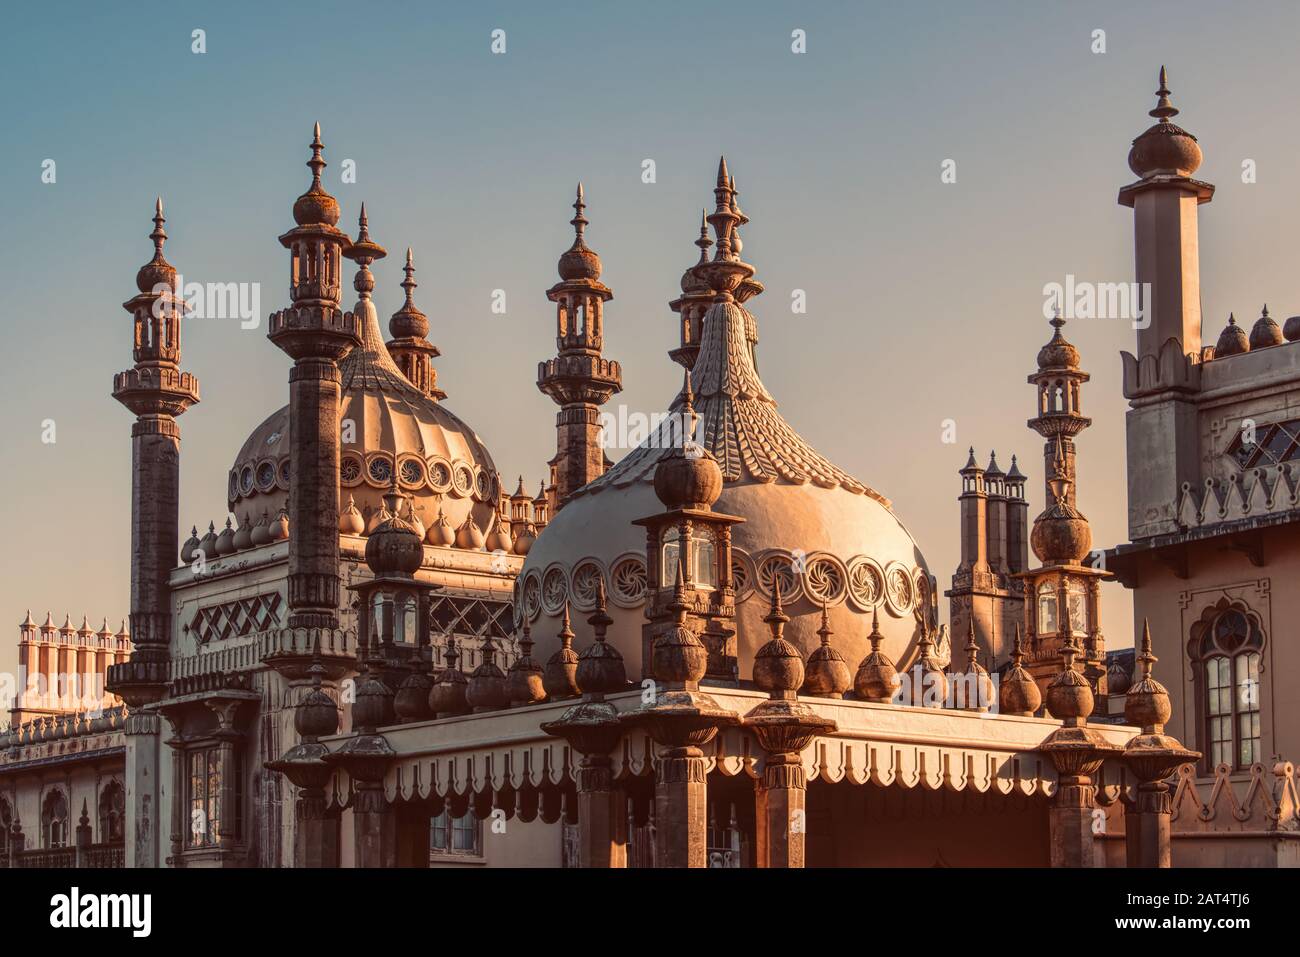 Brighton Pavilion, El Royal Pavilion En Brighton, Reino Unido. Cúpulas de cebolla y minaretes en el techo. Arquitectura de estilo indio y lugar de interés principal. Foto de stock